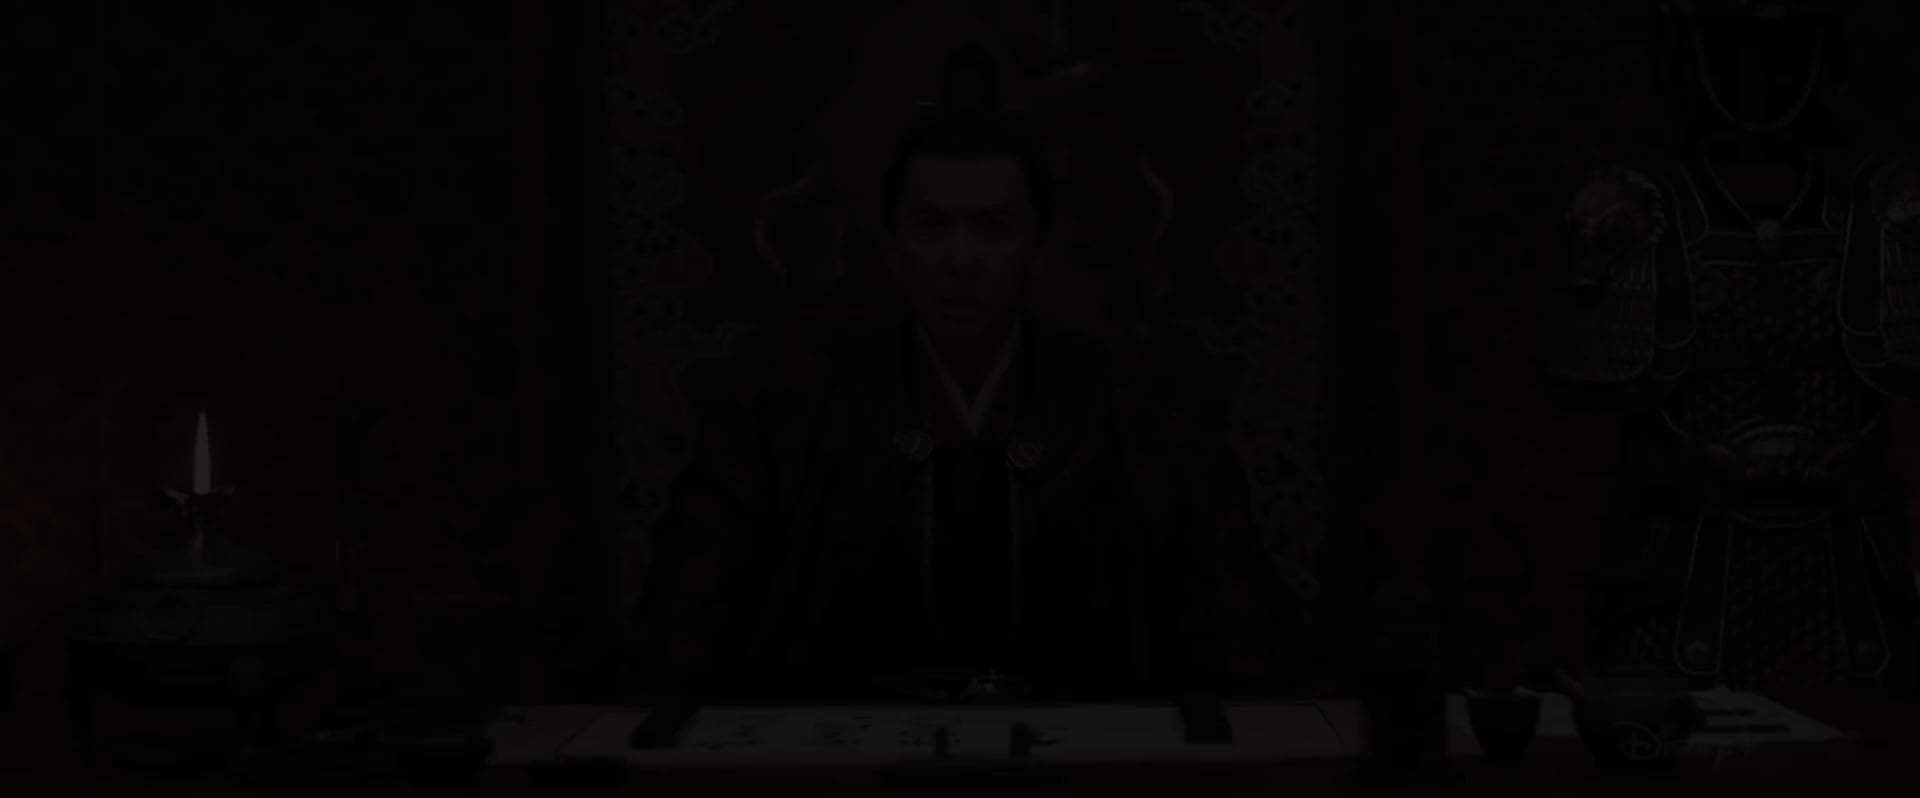 Mulan TV Spot - Spirit (2020) Screen Capture #1